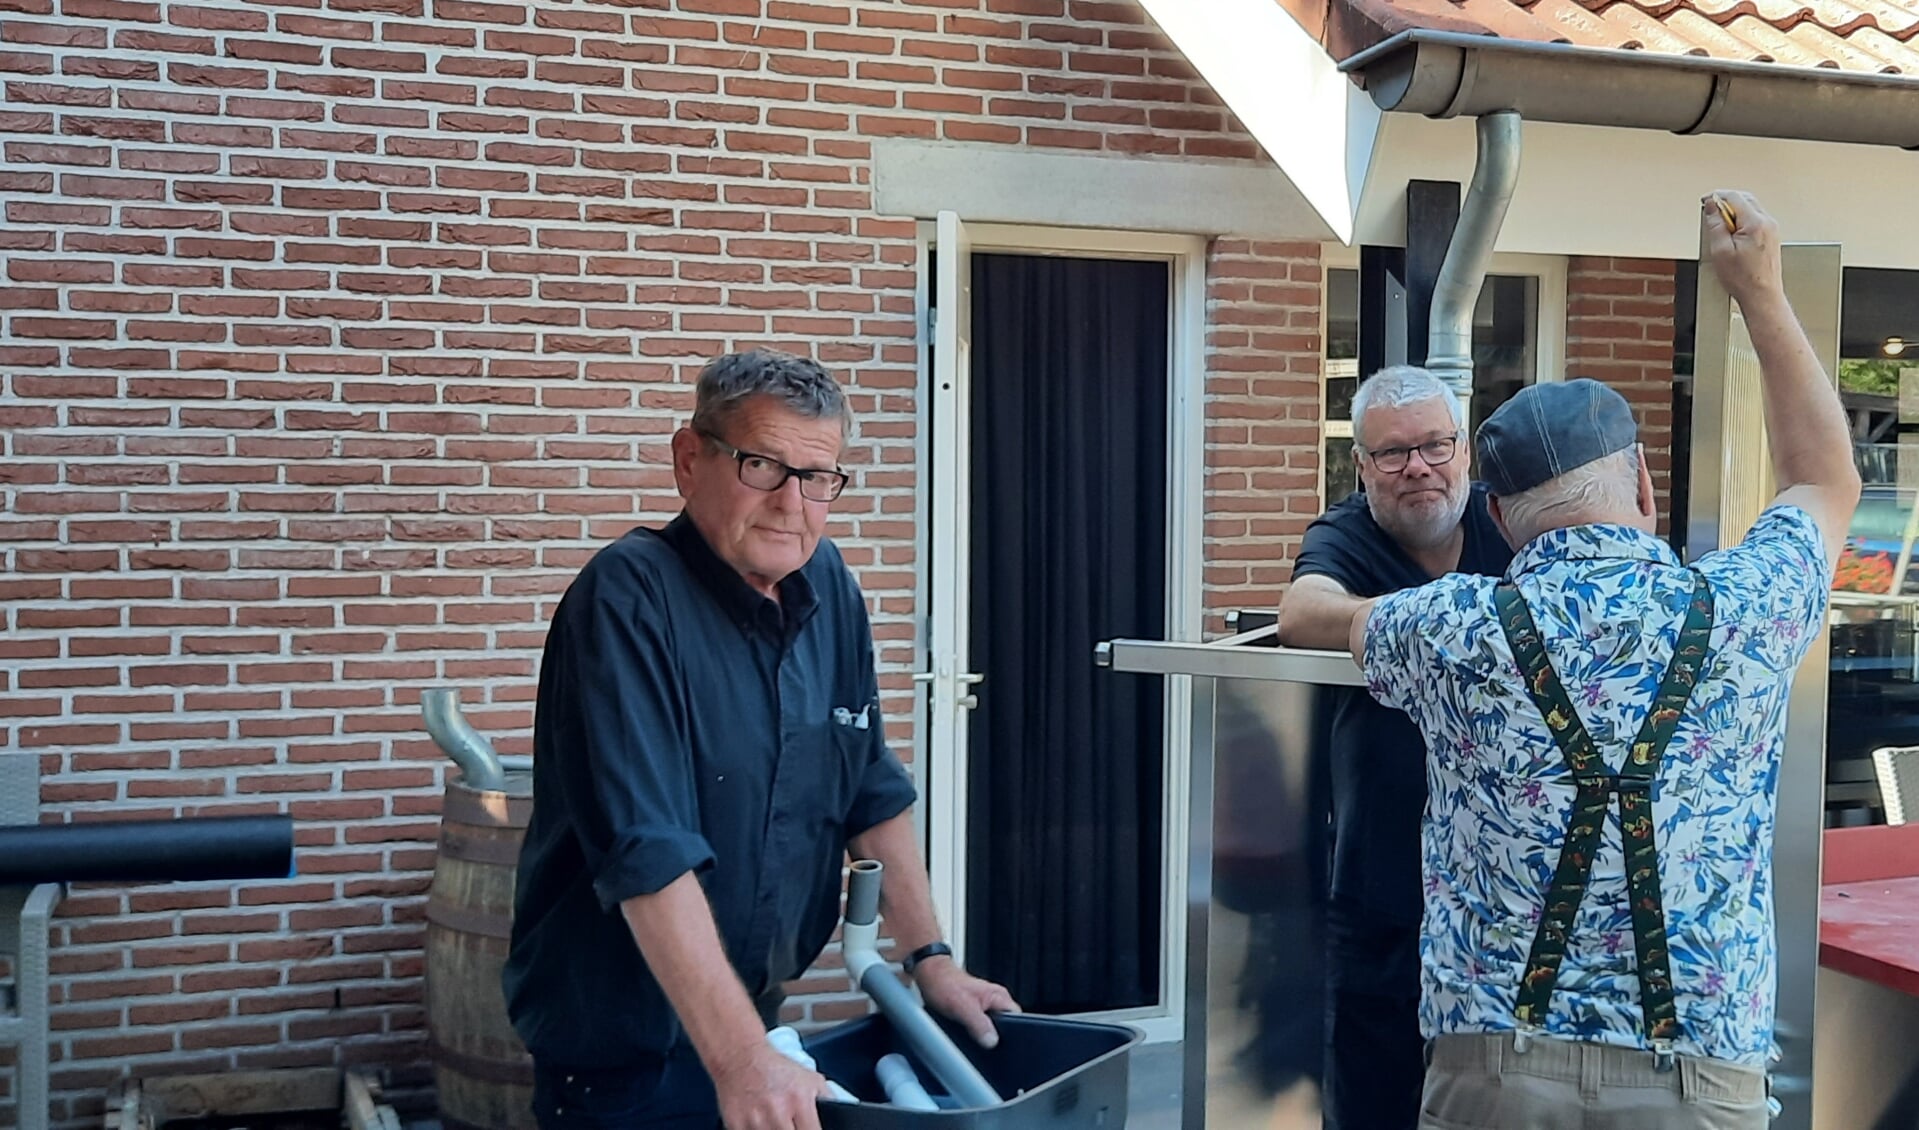 Bennie Wopereis, Jan Bulten en een anonieme vrijwilliger (vlnr.) werken hard om de nieuwe keuken af te krijgen. Foto: Kyra Broshuis